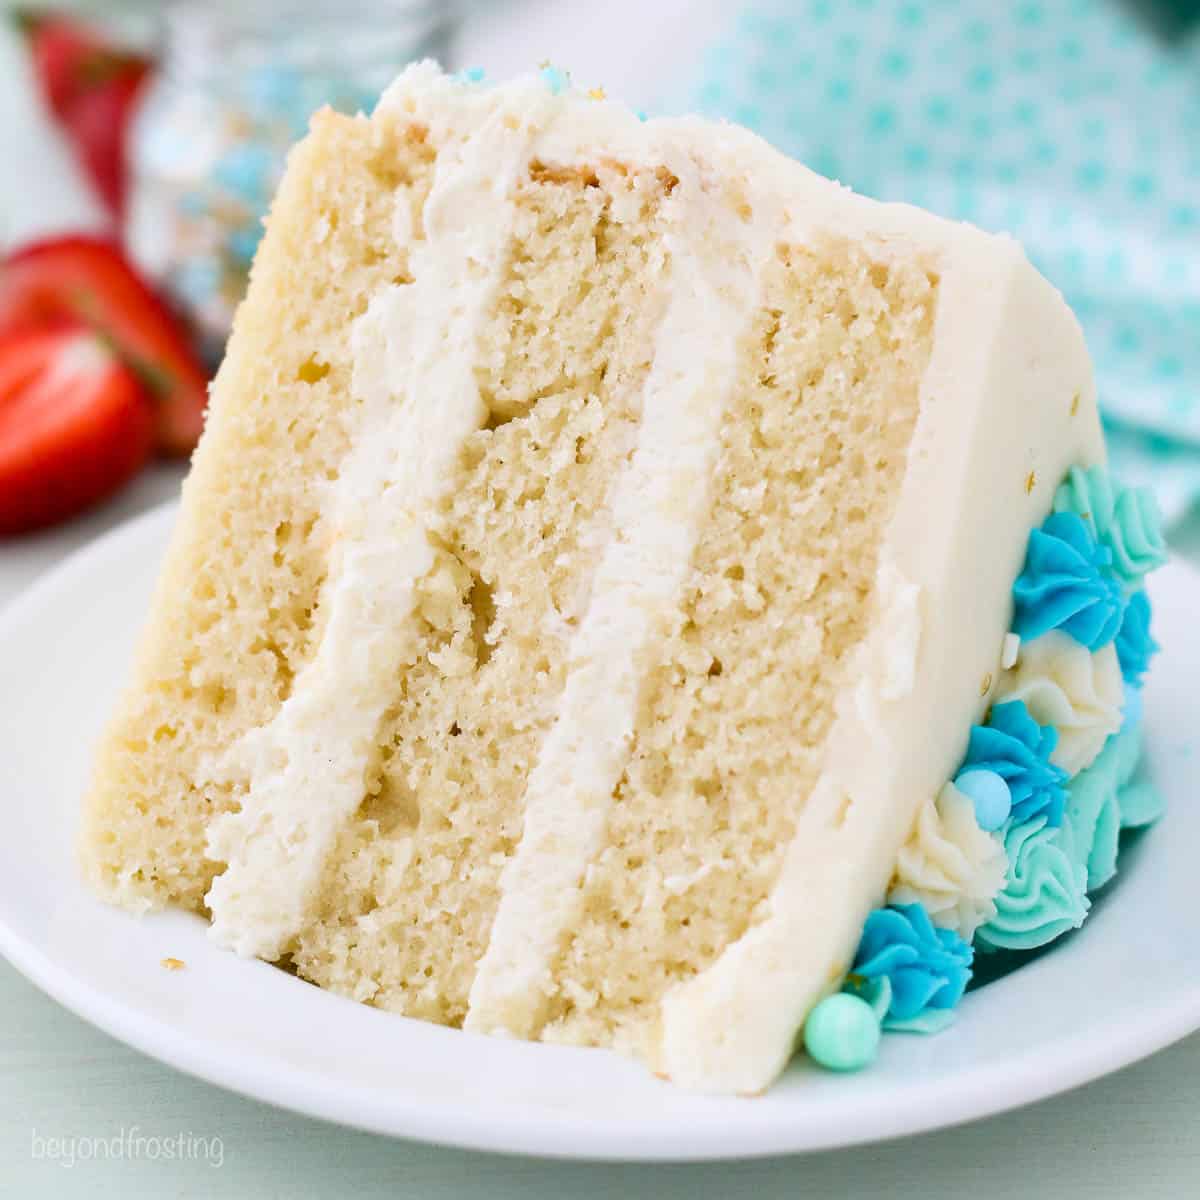 Easy Vanilla Sponge Cake Recipe - The Dinner Bite